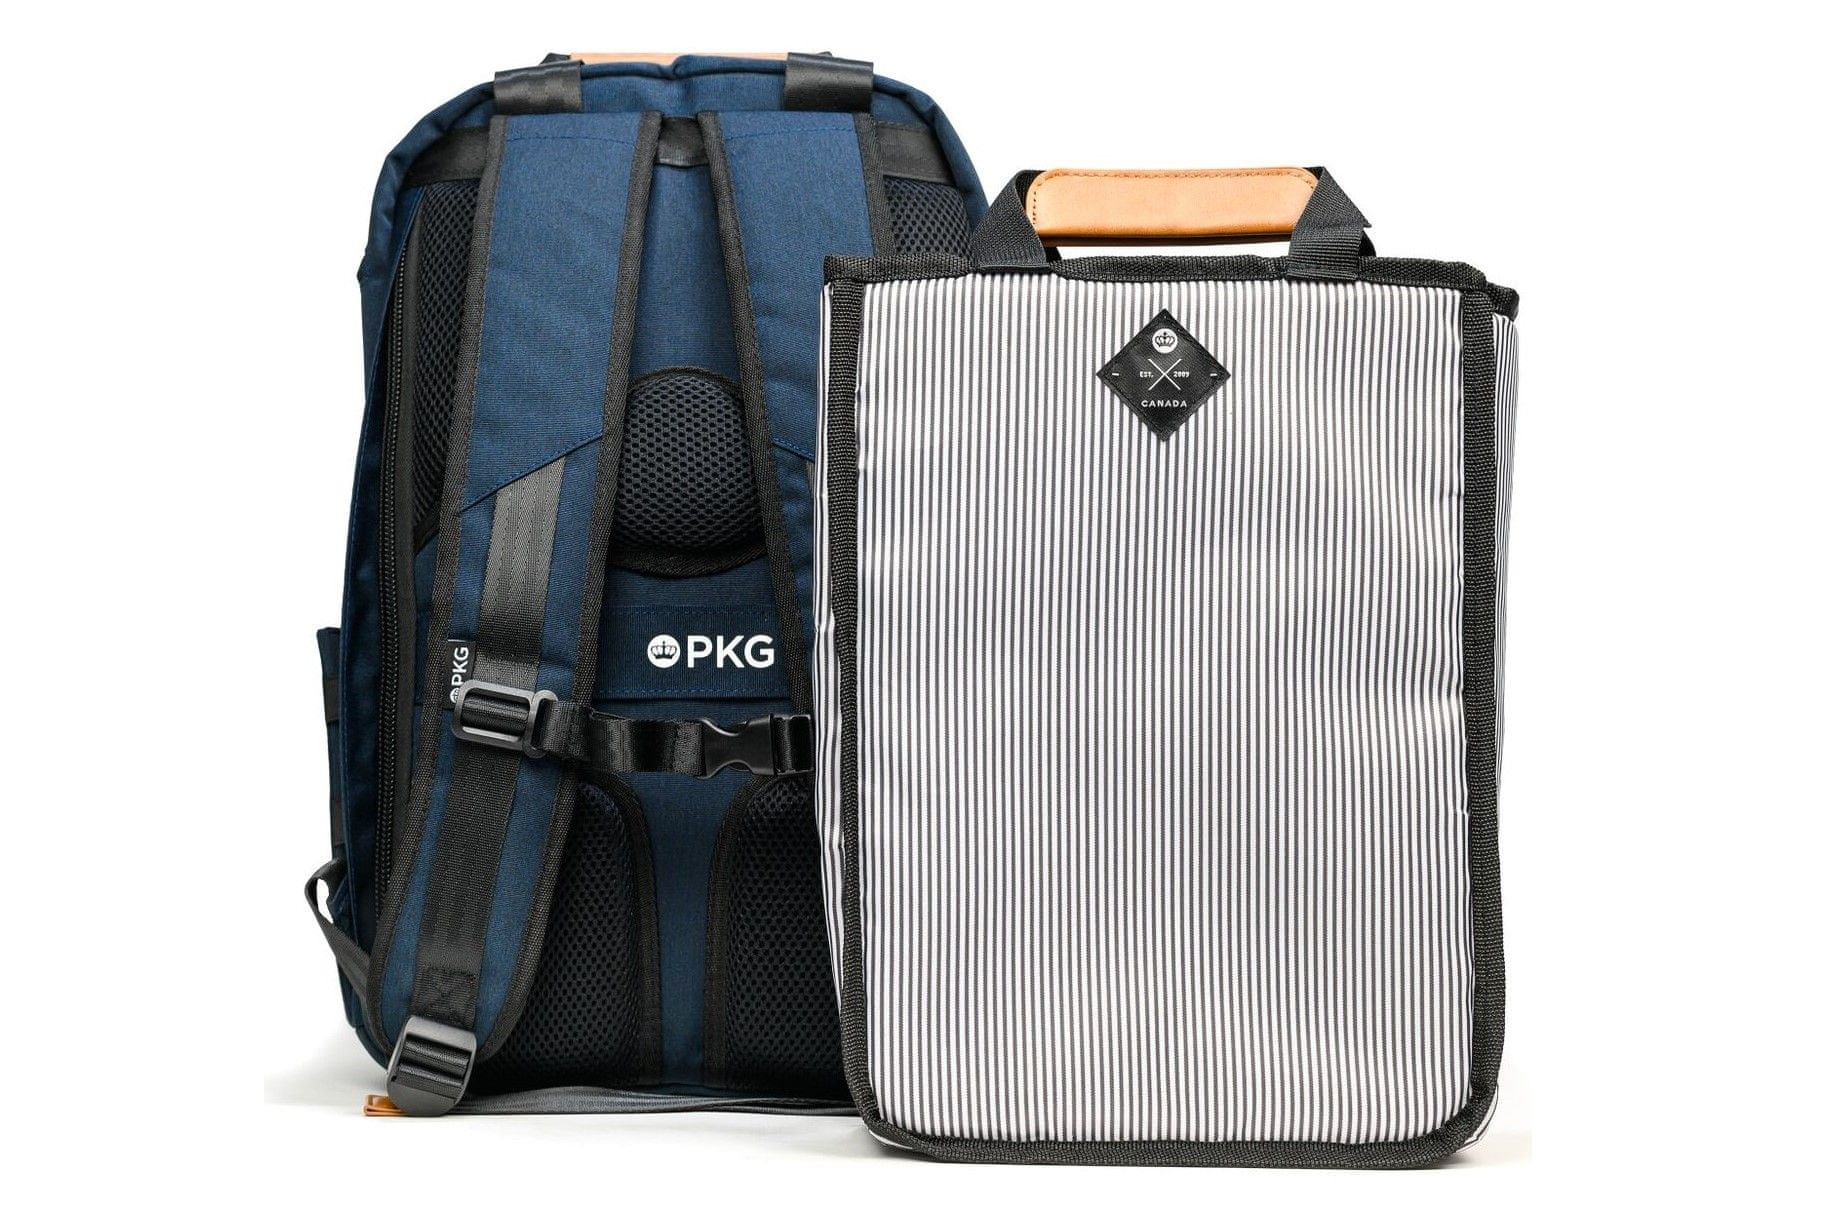 pkg rosseau backpack 13/14 (PKG-ROSS-NV01TN) vložená taška boční vstup polstrované kapsy